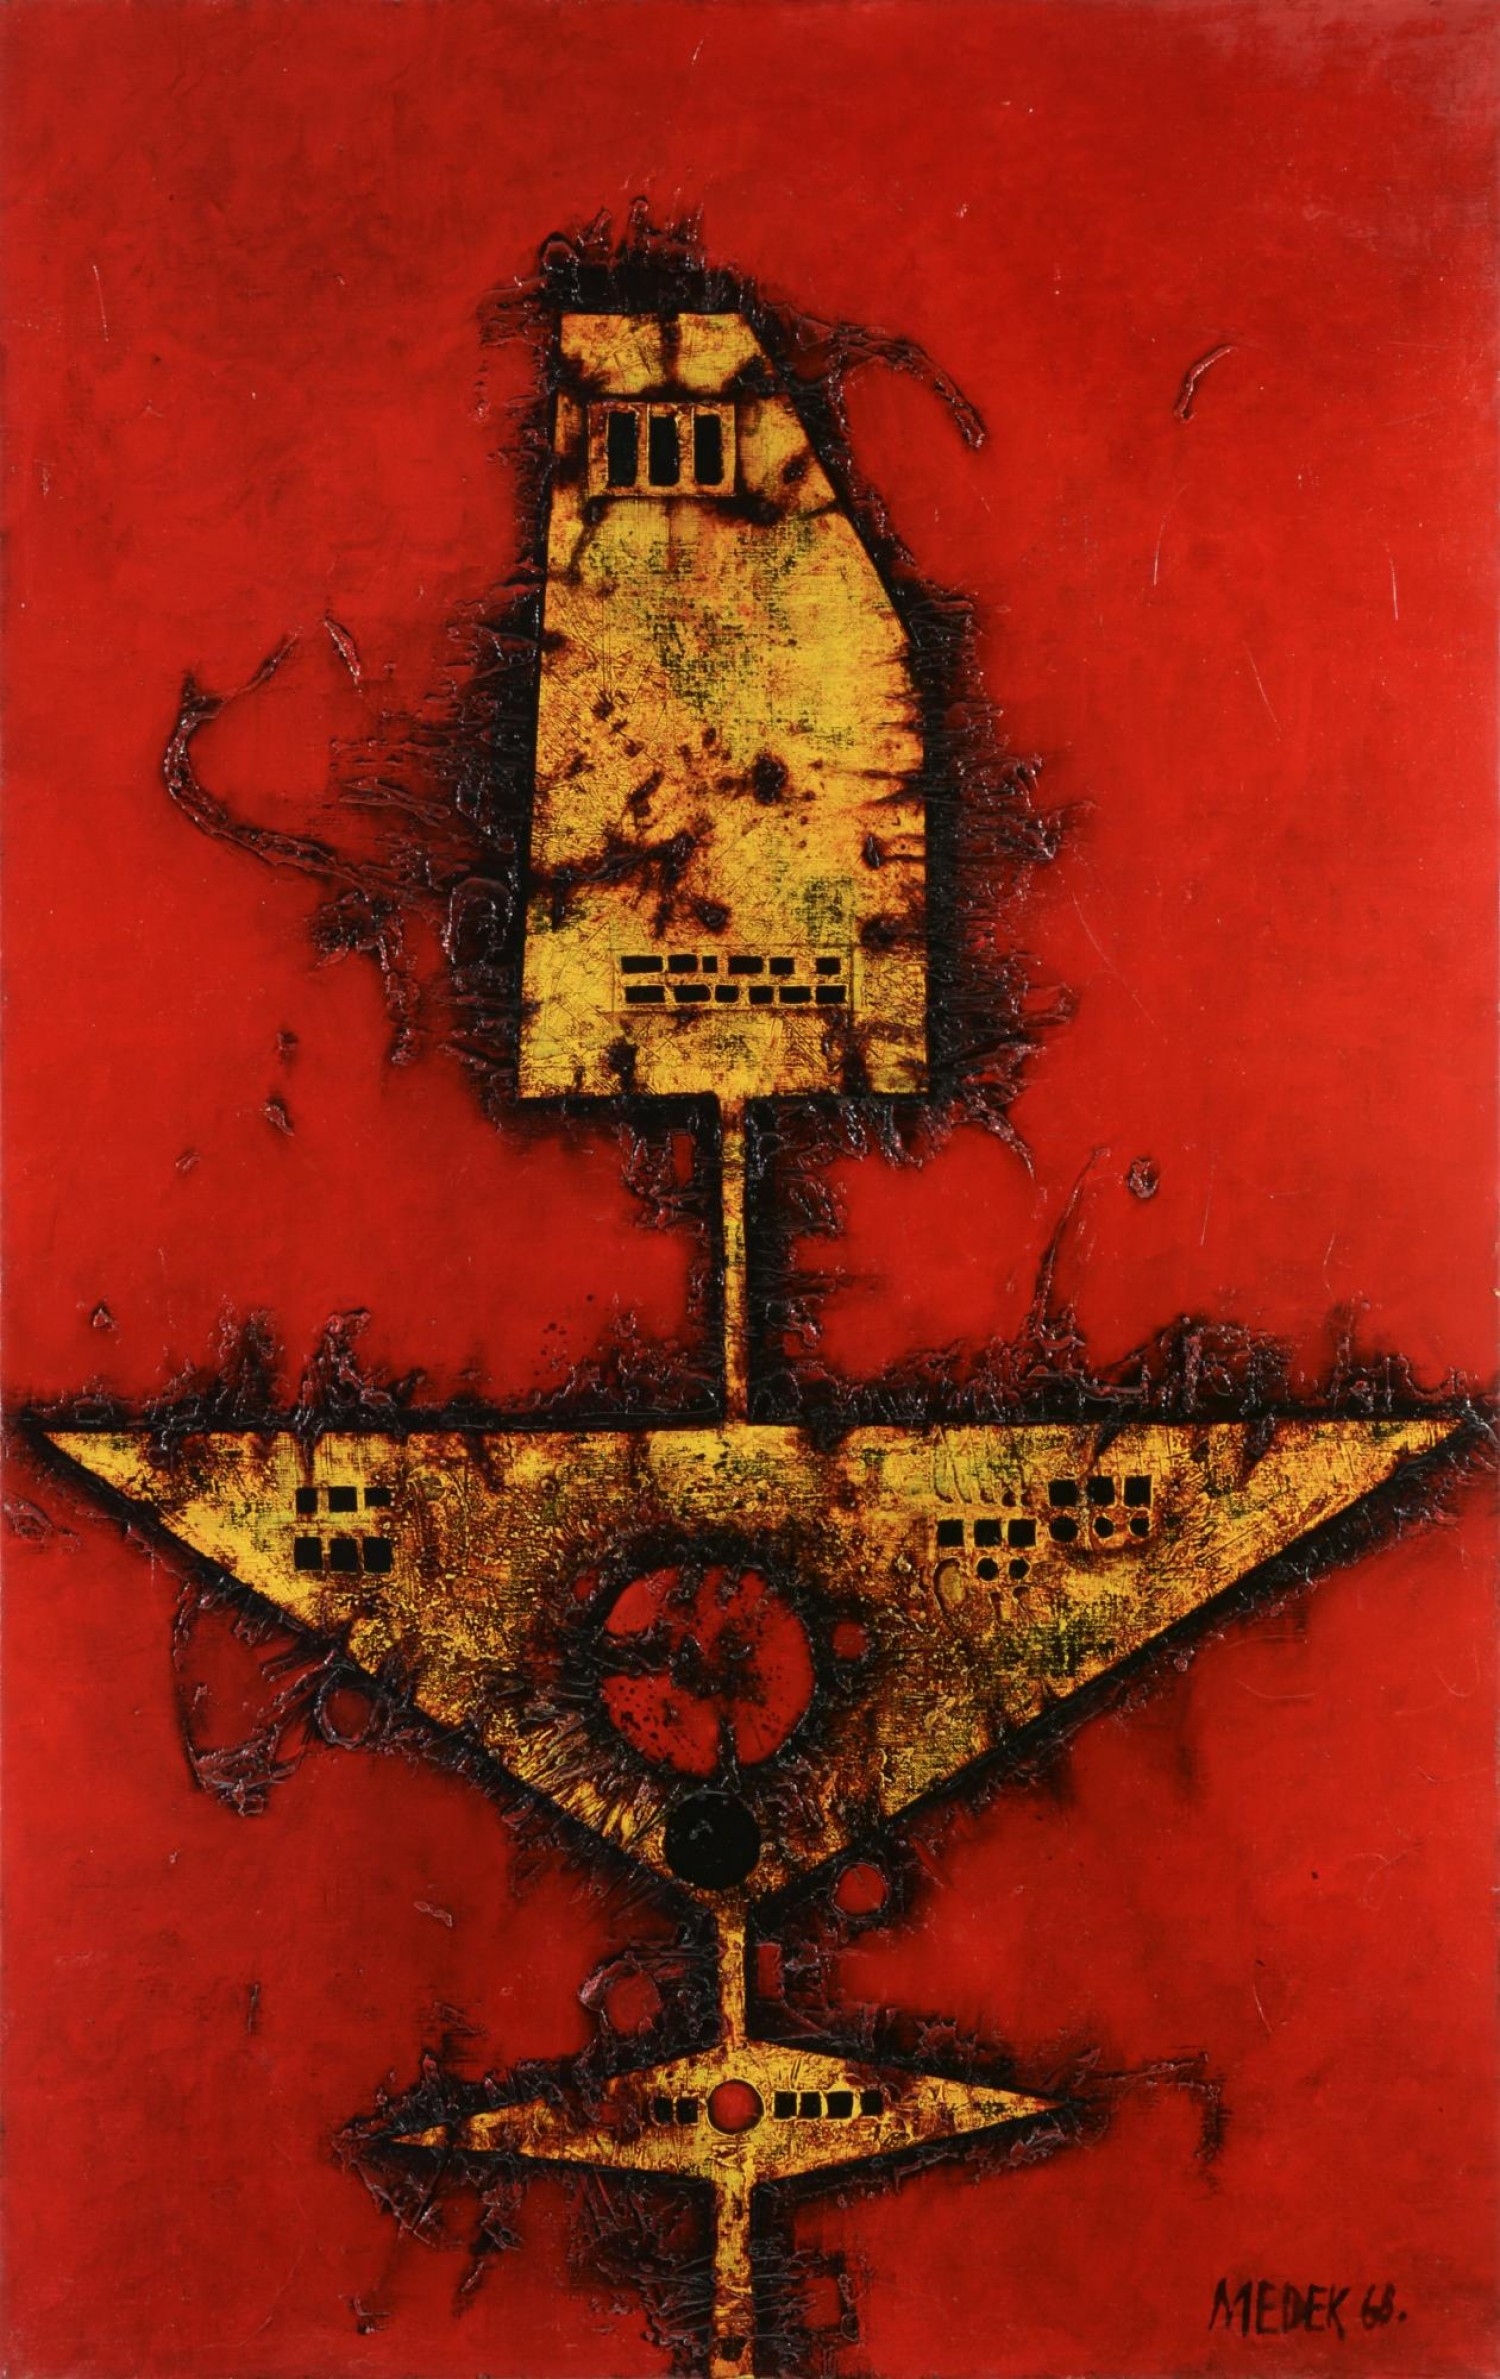 Mikuláš Medek: Červený herec, 1968, kombinovaná technika, 120 x 74 cm, Aukční dům Zezula 28. 5. 2022, cena: 7 620 000 Kč